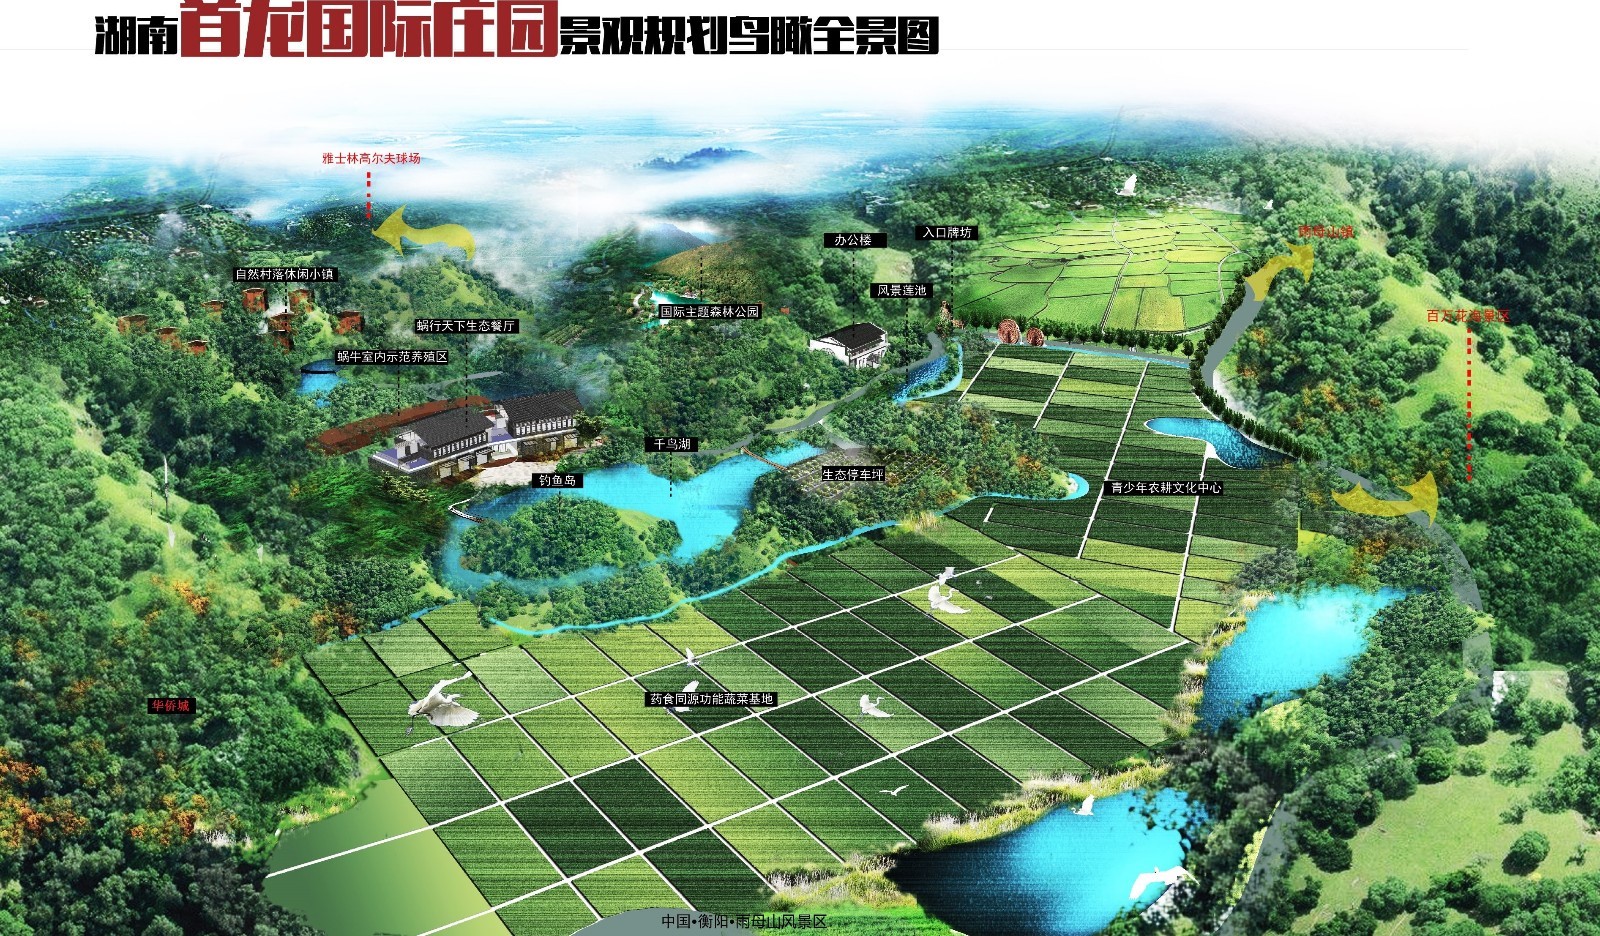 湖南首龙国际庄园项目正式开工  衡阳近郊再添度假休闲好去处